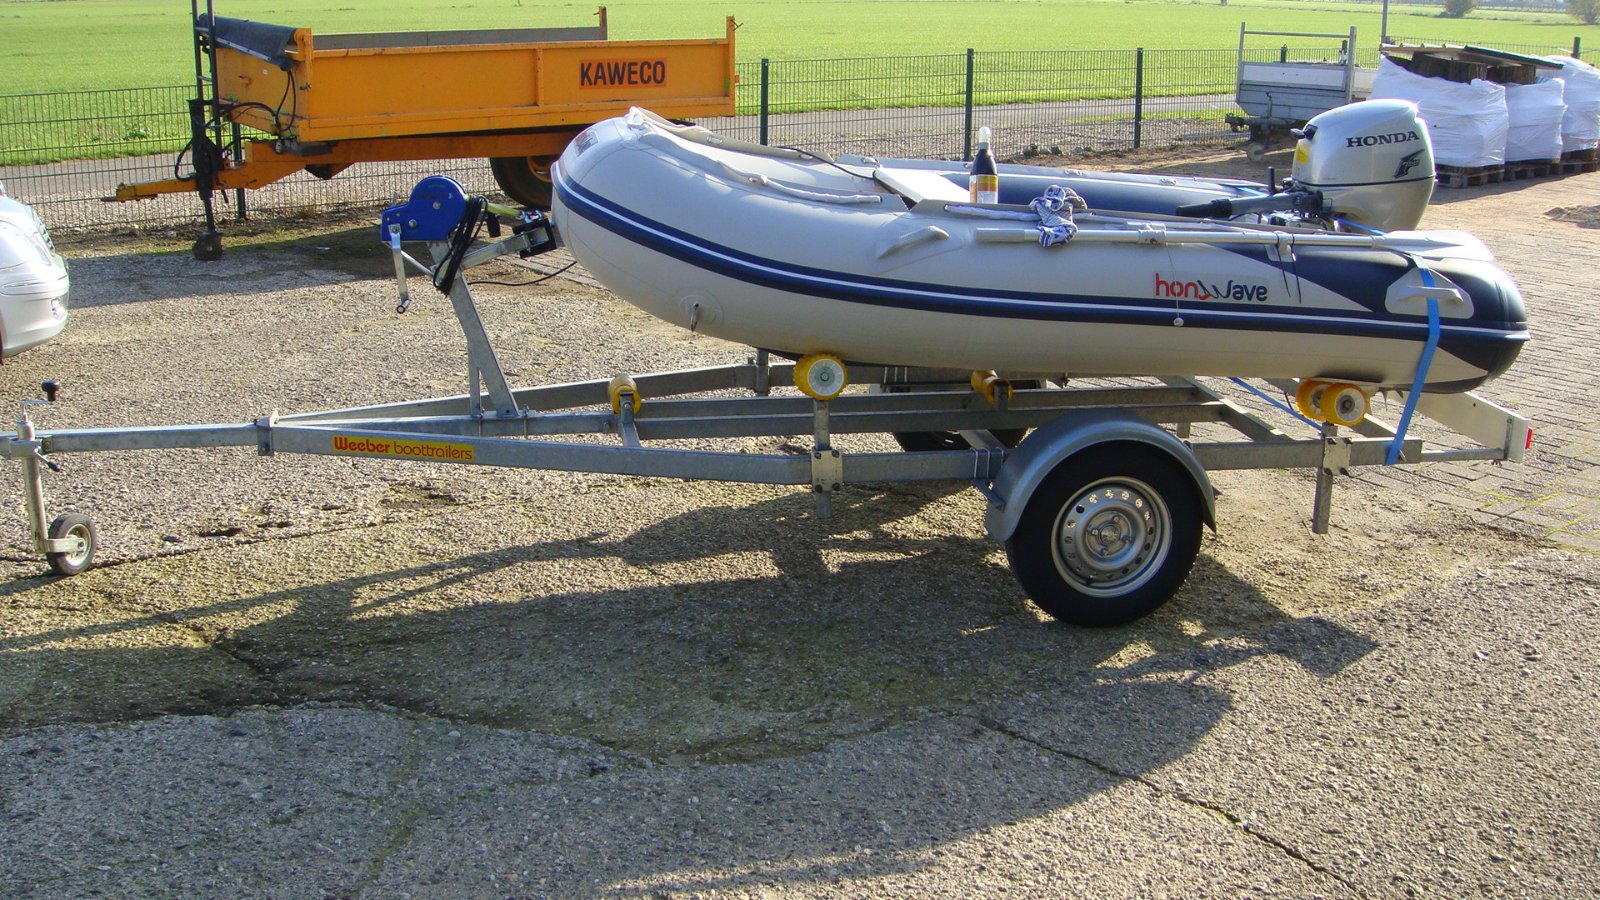 Tol Voorwaardelijk nog een keer Z.g.a.n. Honda rubberboot met 10pk Honda motor evt. met trailer